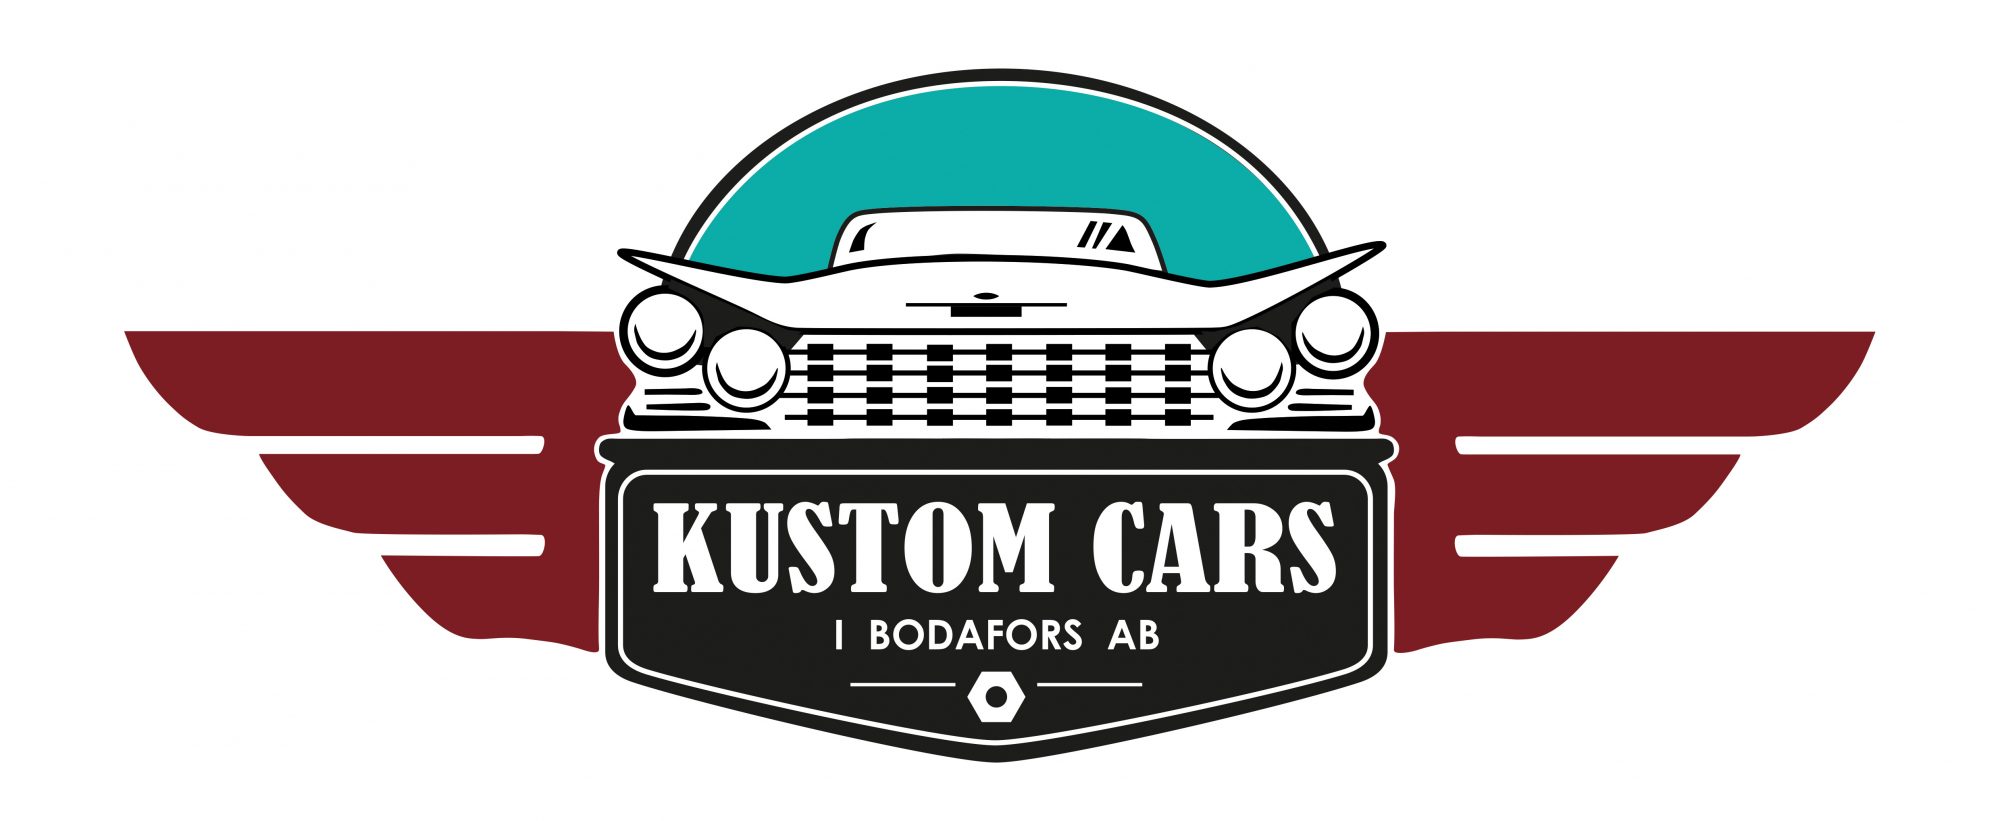 Välkommen till Kustom Cars i Bodafors AB